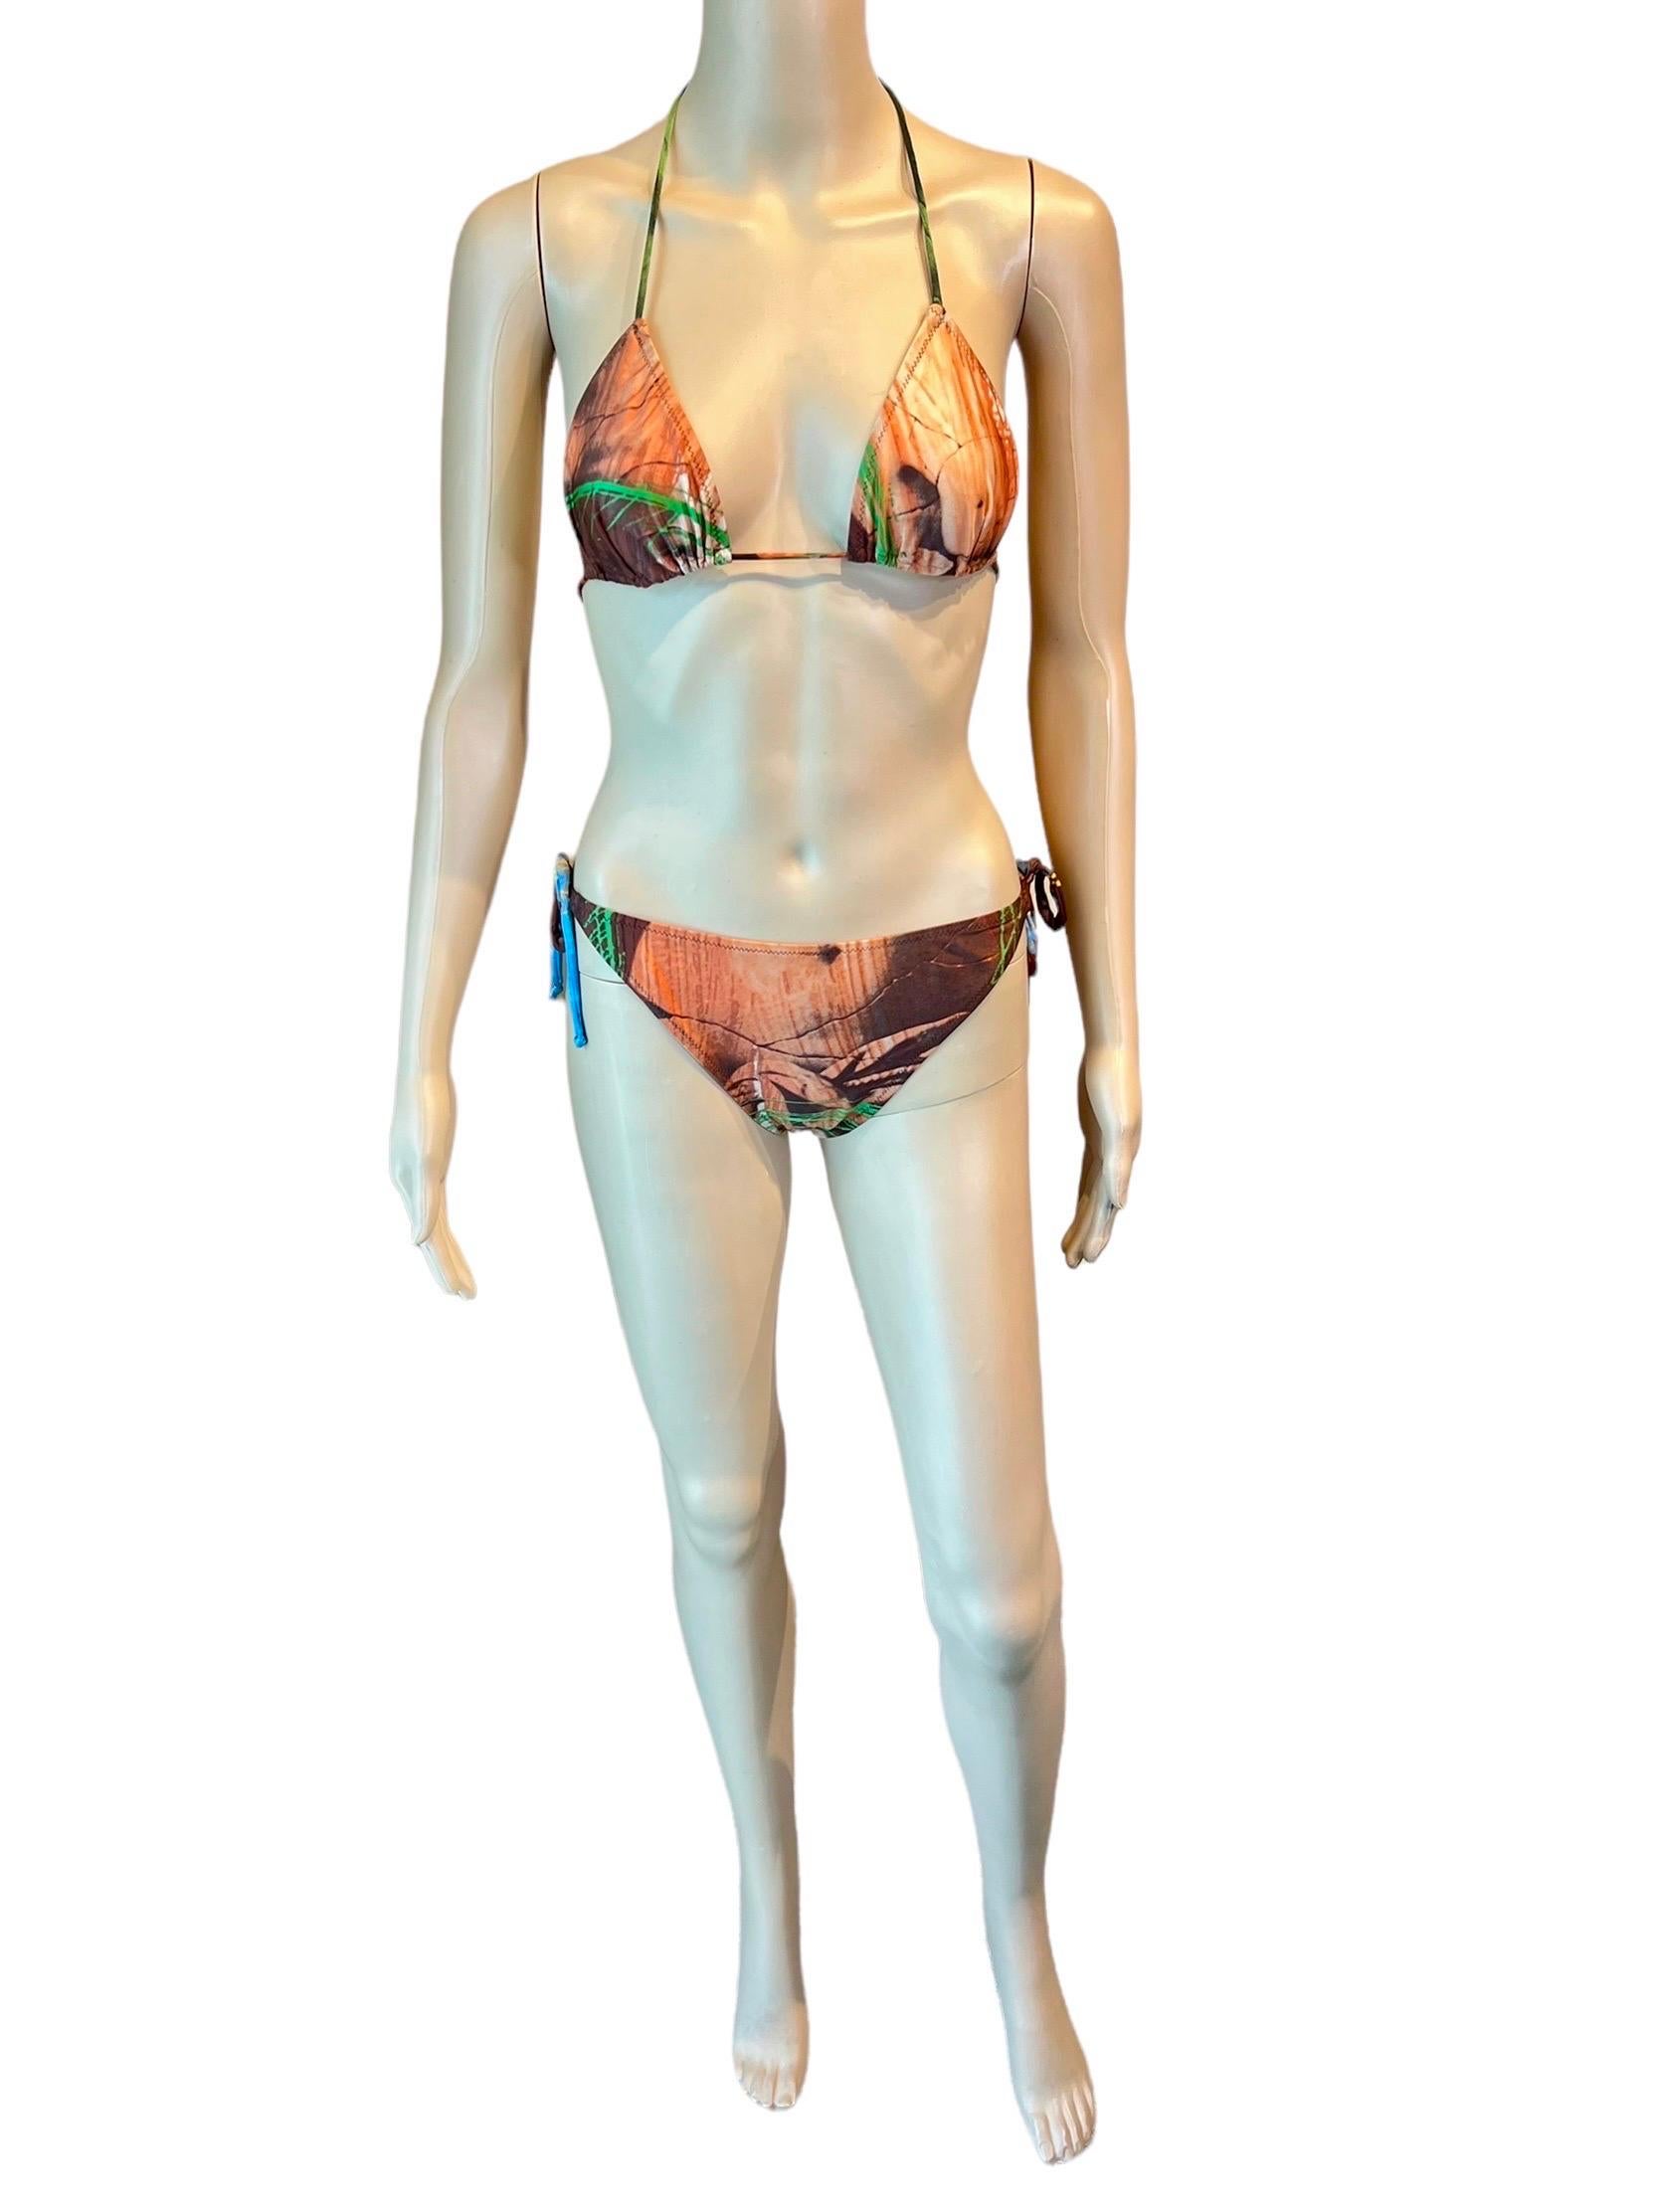 Jean Paul Gaultier S/S 1999 Venus de Milo Bikini Swimwear Swimsuit 2 Piece Set For Sale 2